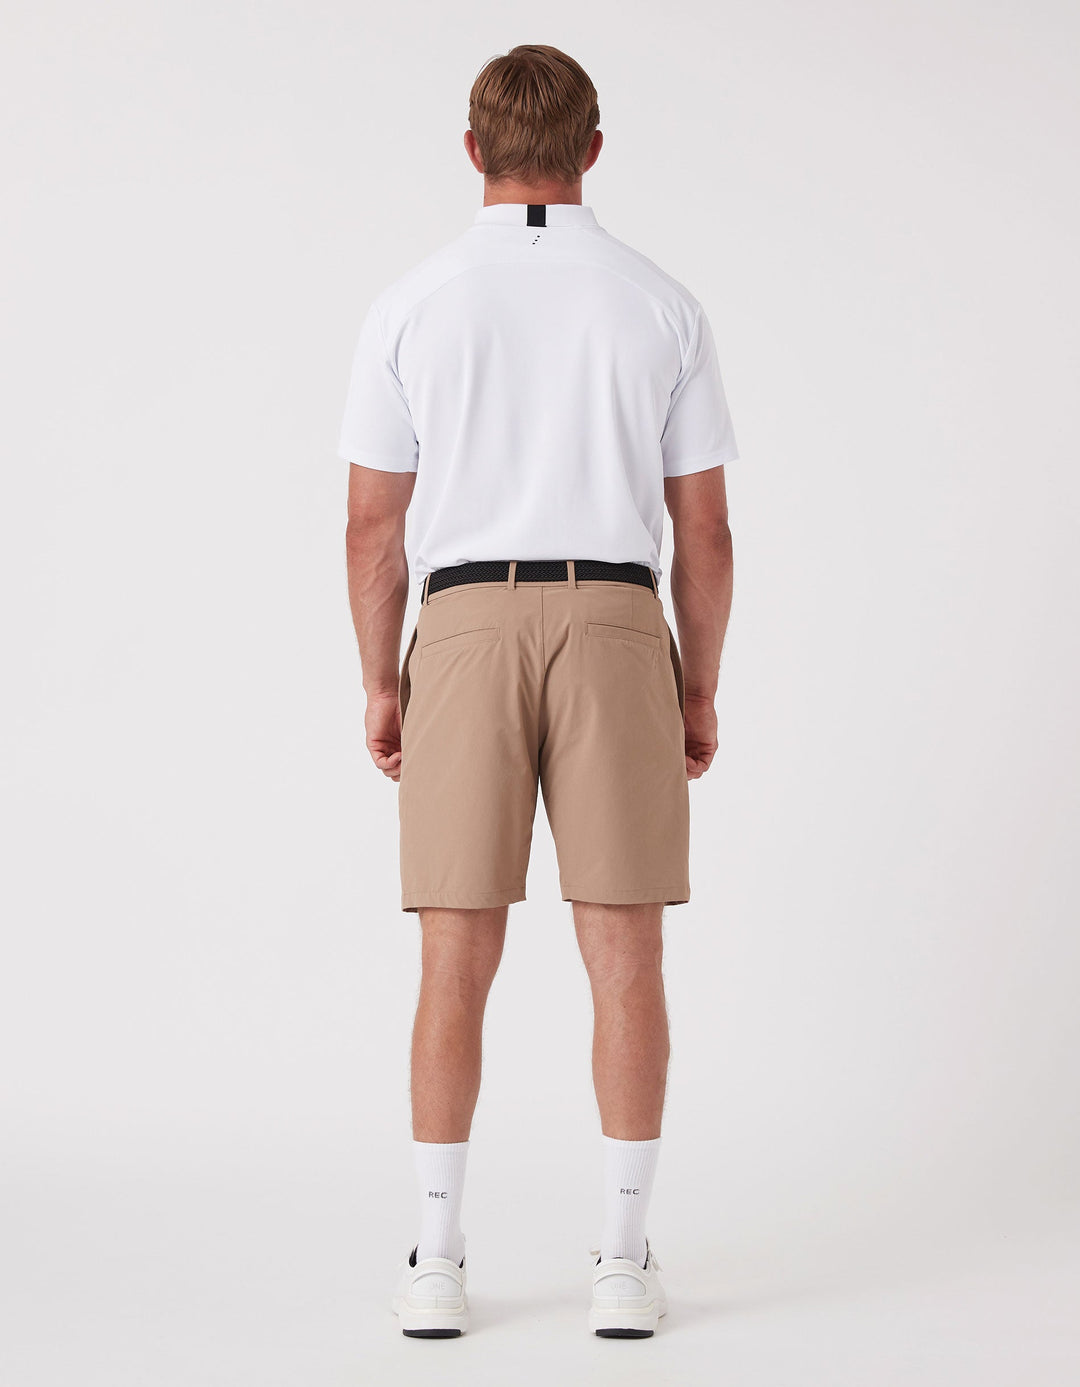 REC GEN - Men's DriForm Golf Short Dk - Tan